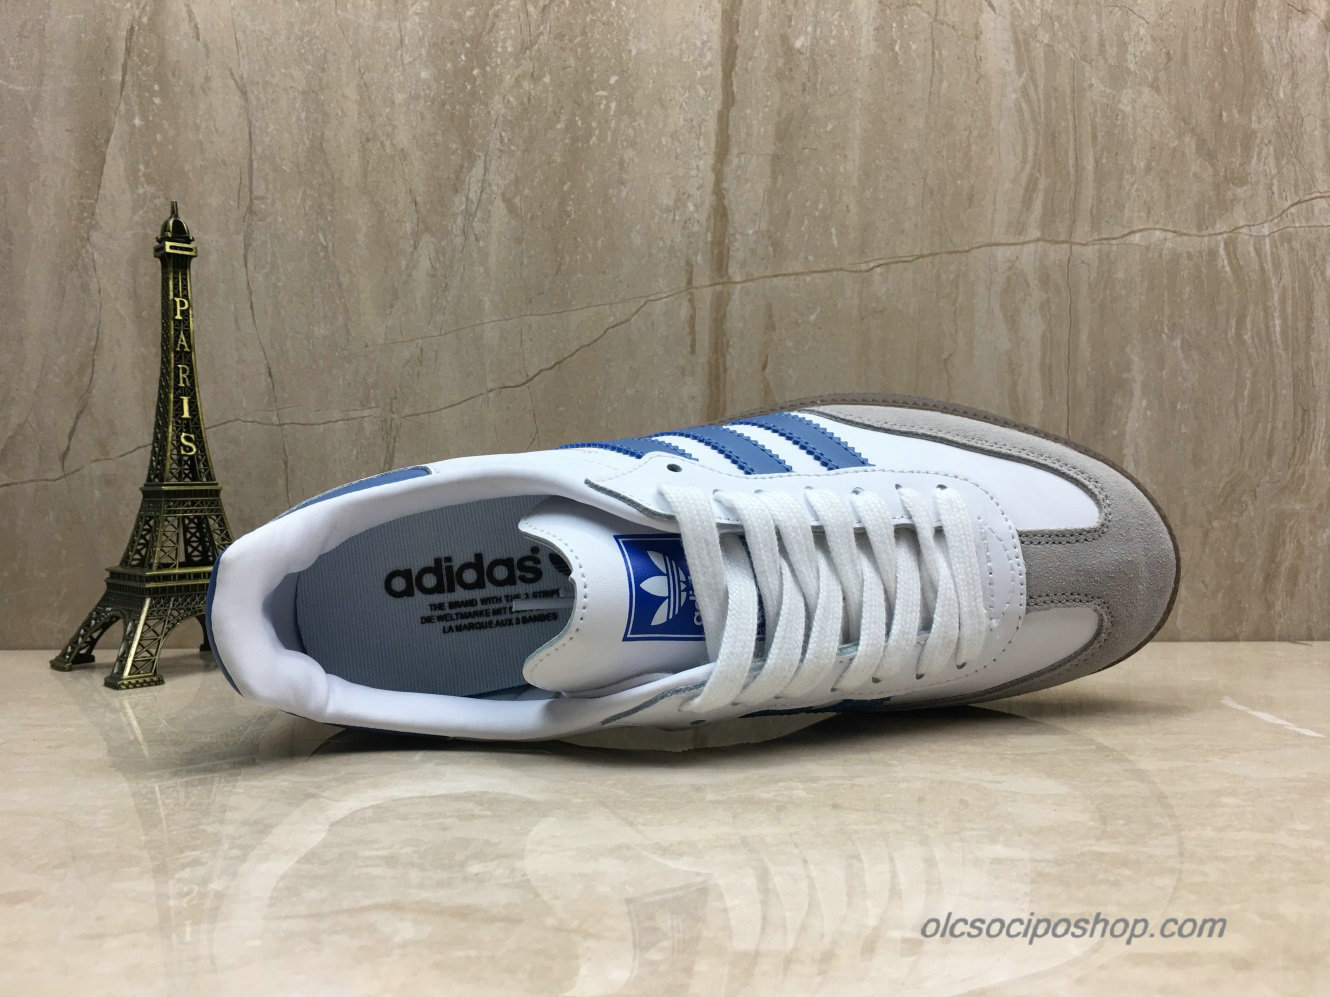 Adidas Samba OG Fehér/Kék/Szürke Cipők (B44629) - Kattintásra bezárul